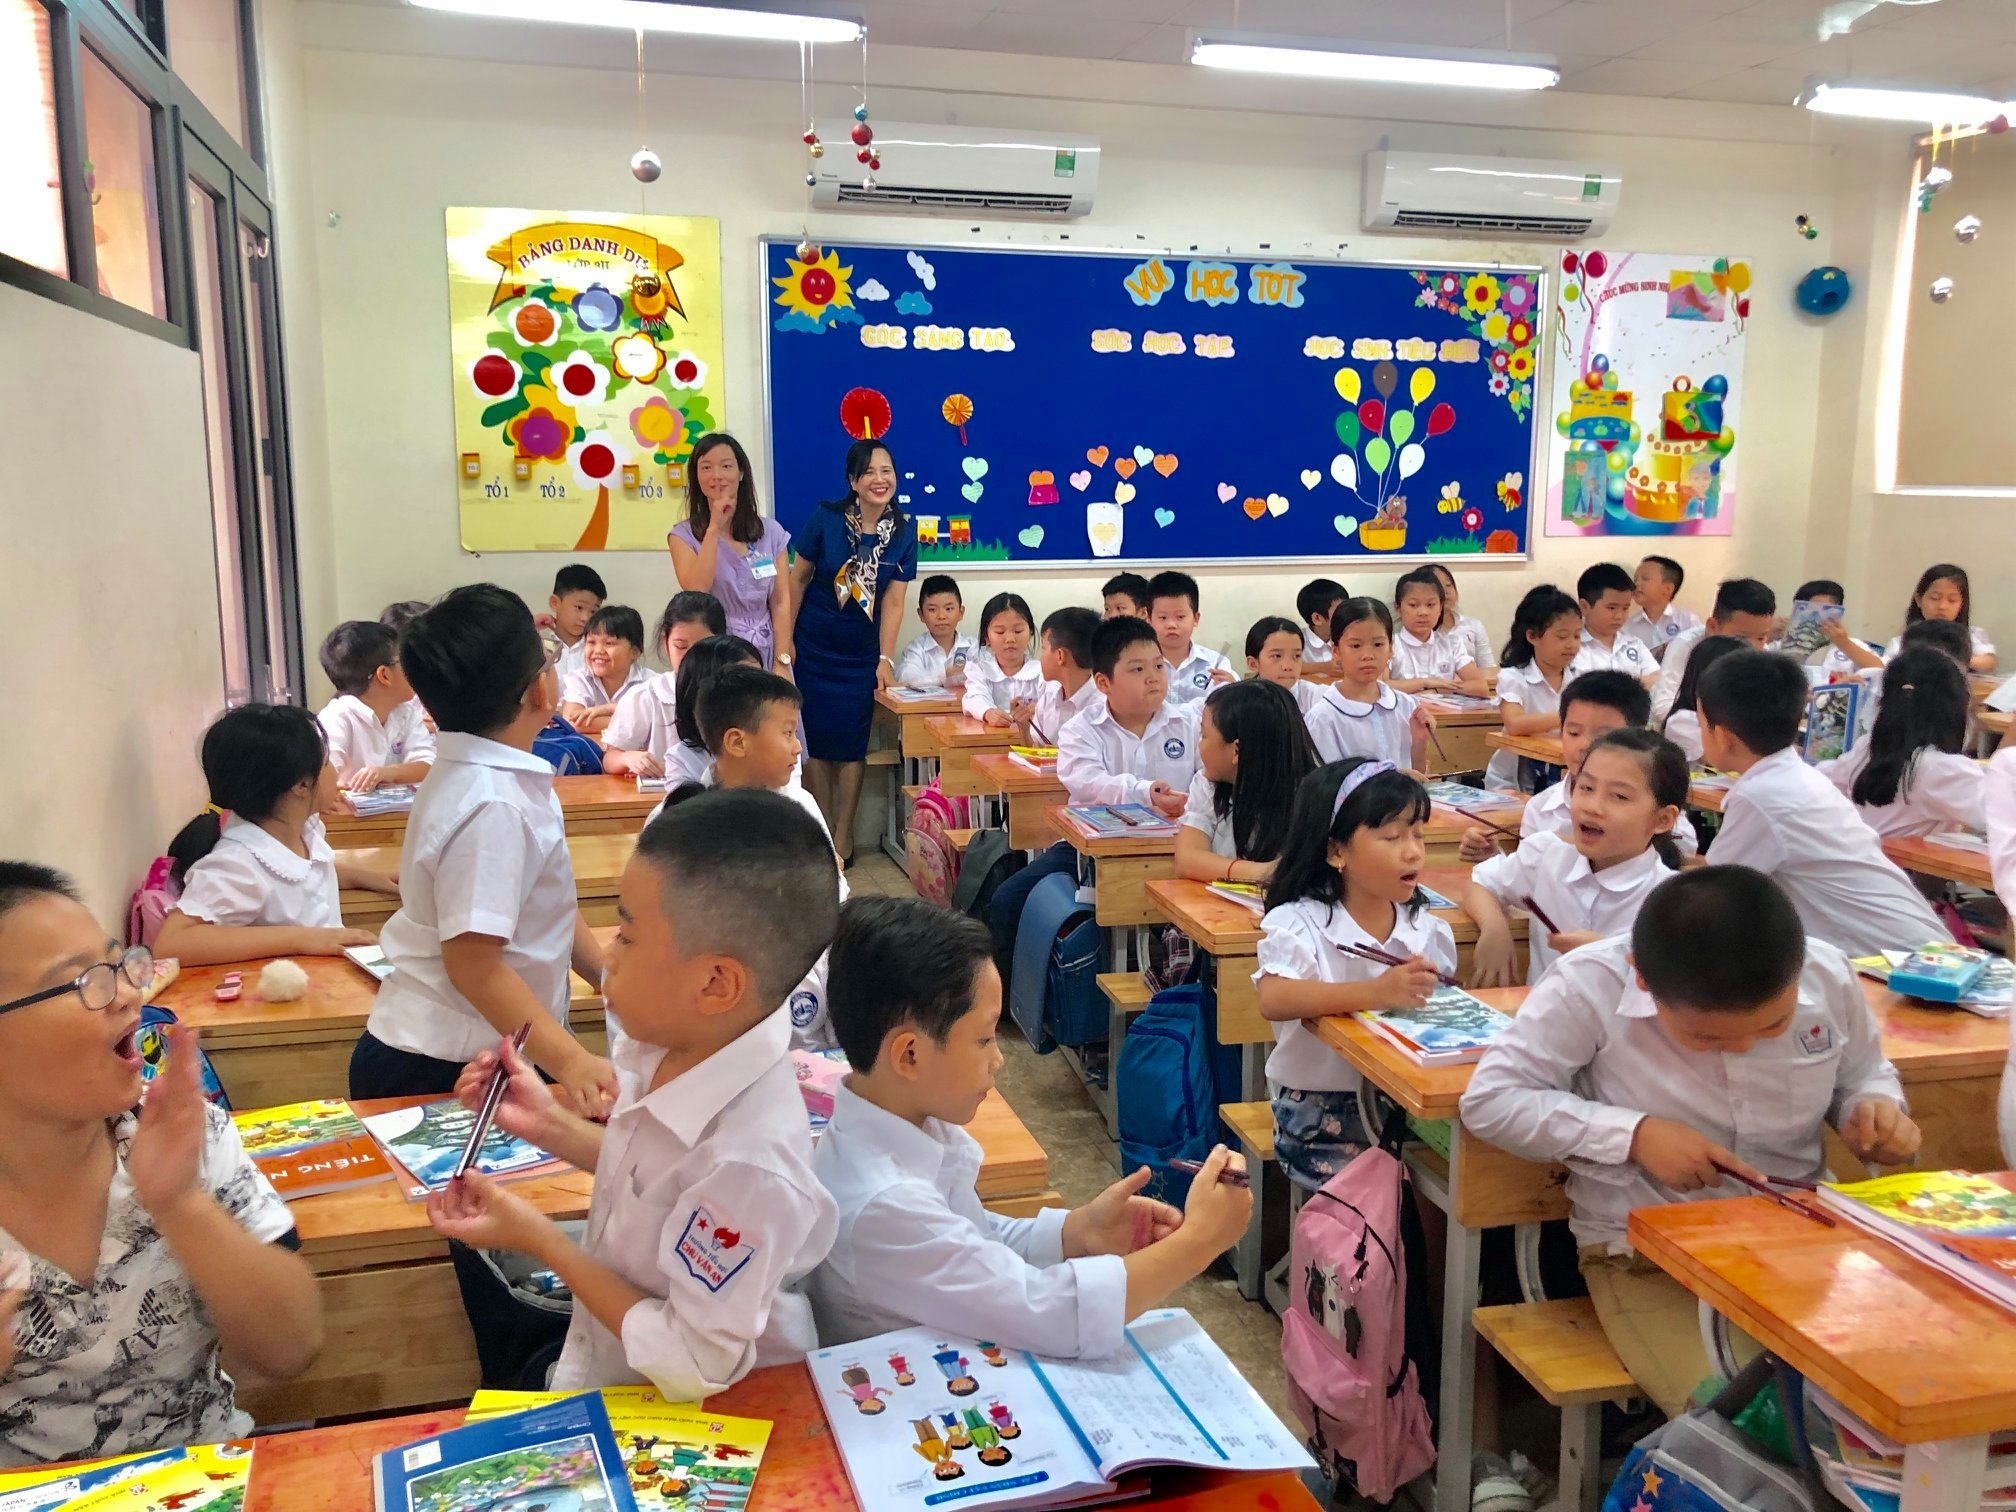 Chị Ngô Minh Thủy (váy xanh) trong một lần cùng Đại sứ quán Nhật, Quỹ Japan Foundation đến tặng sách, đồ dùng học tập và dự giờ tiếng Nhật của học sinh lớp 3 Trường Tiểu học Chu Văn An - Hà Nội vào năm 2019 (Ảnh: NVCC).